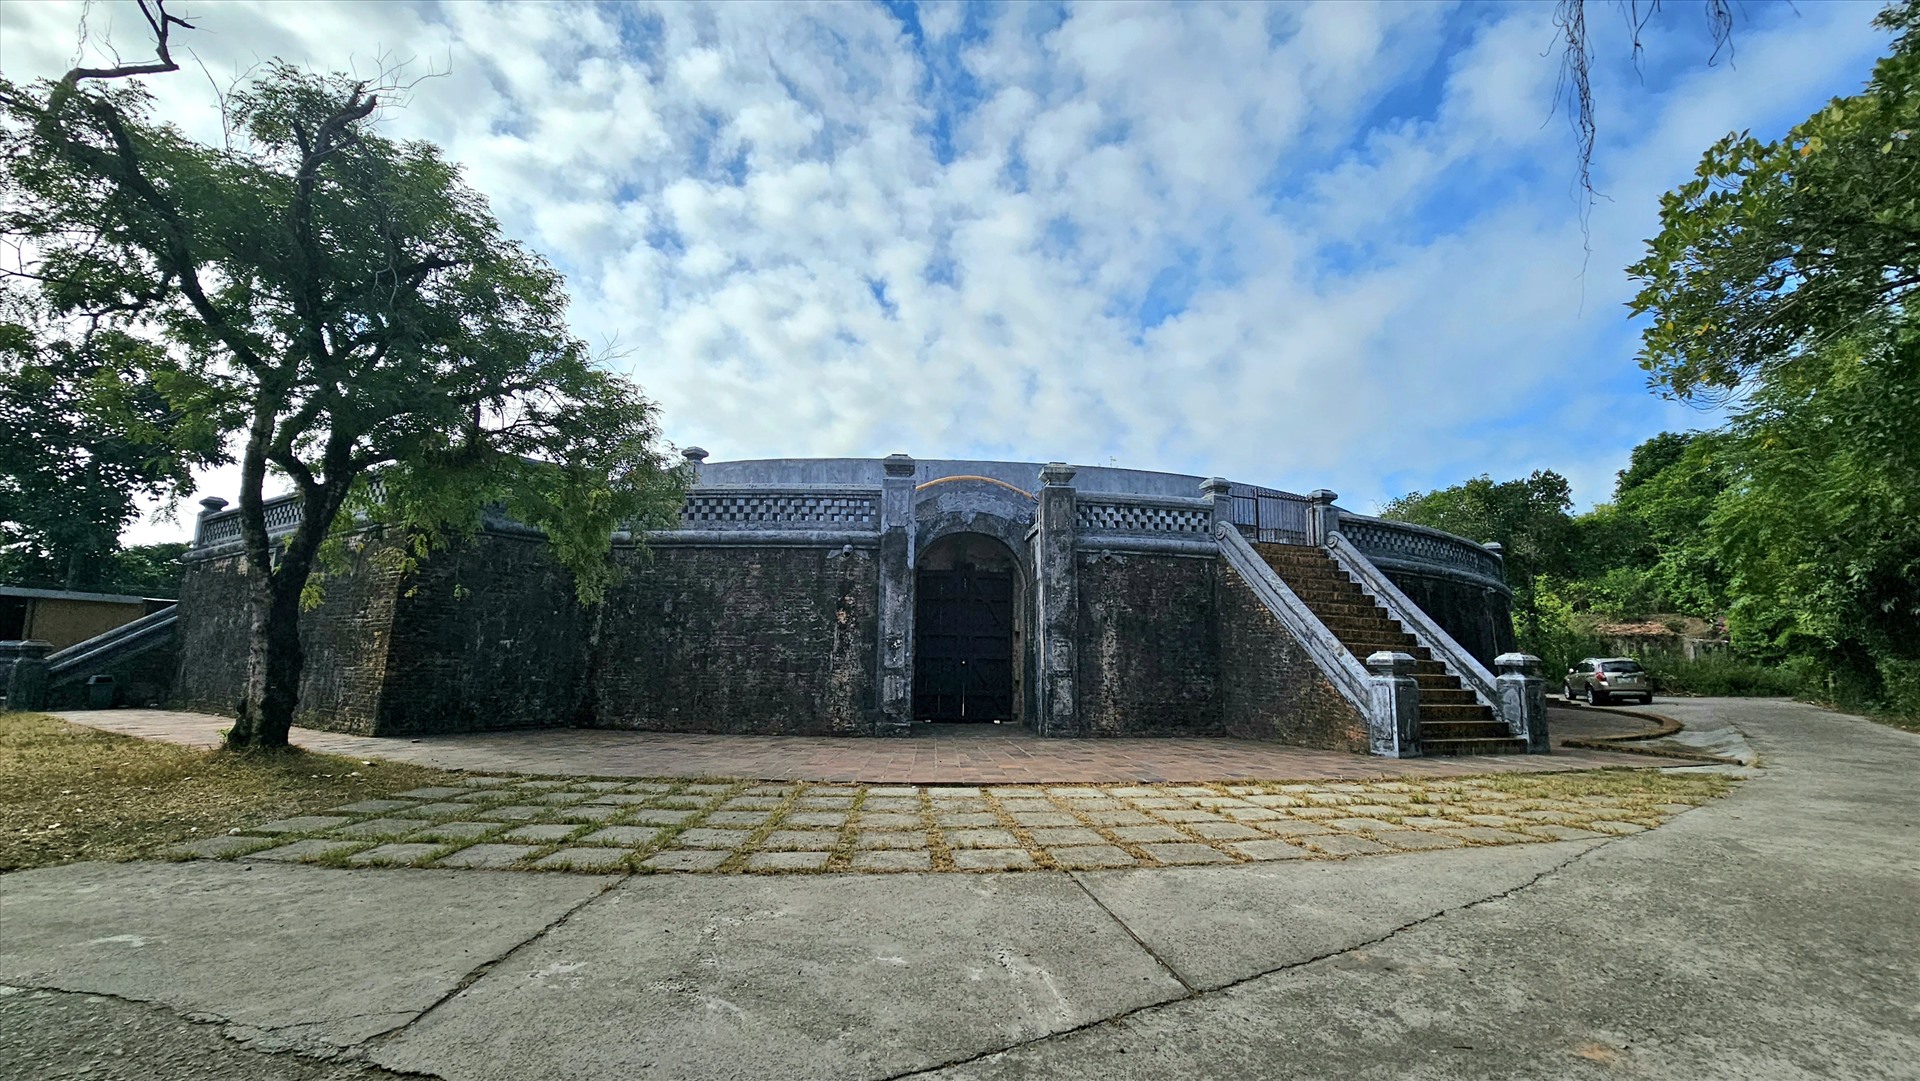 Được biết, đấu trường Hổ Quyền được xây dựng vào năm 1830 dưới thời vua Minh Mạng và tọa lạc tại phường Thủy Biều, TP Huế, cách Kinh thành Huế 4km, không khó để tìm đến địa danh này. 